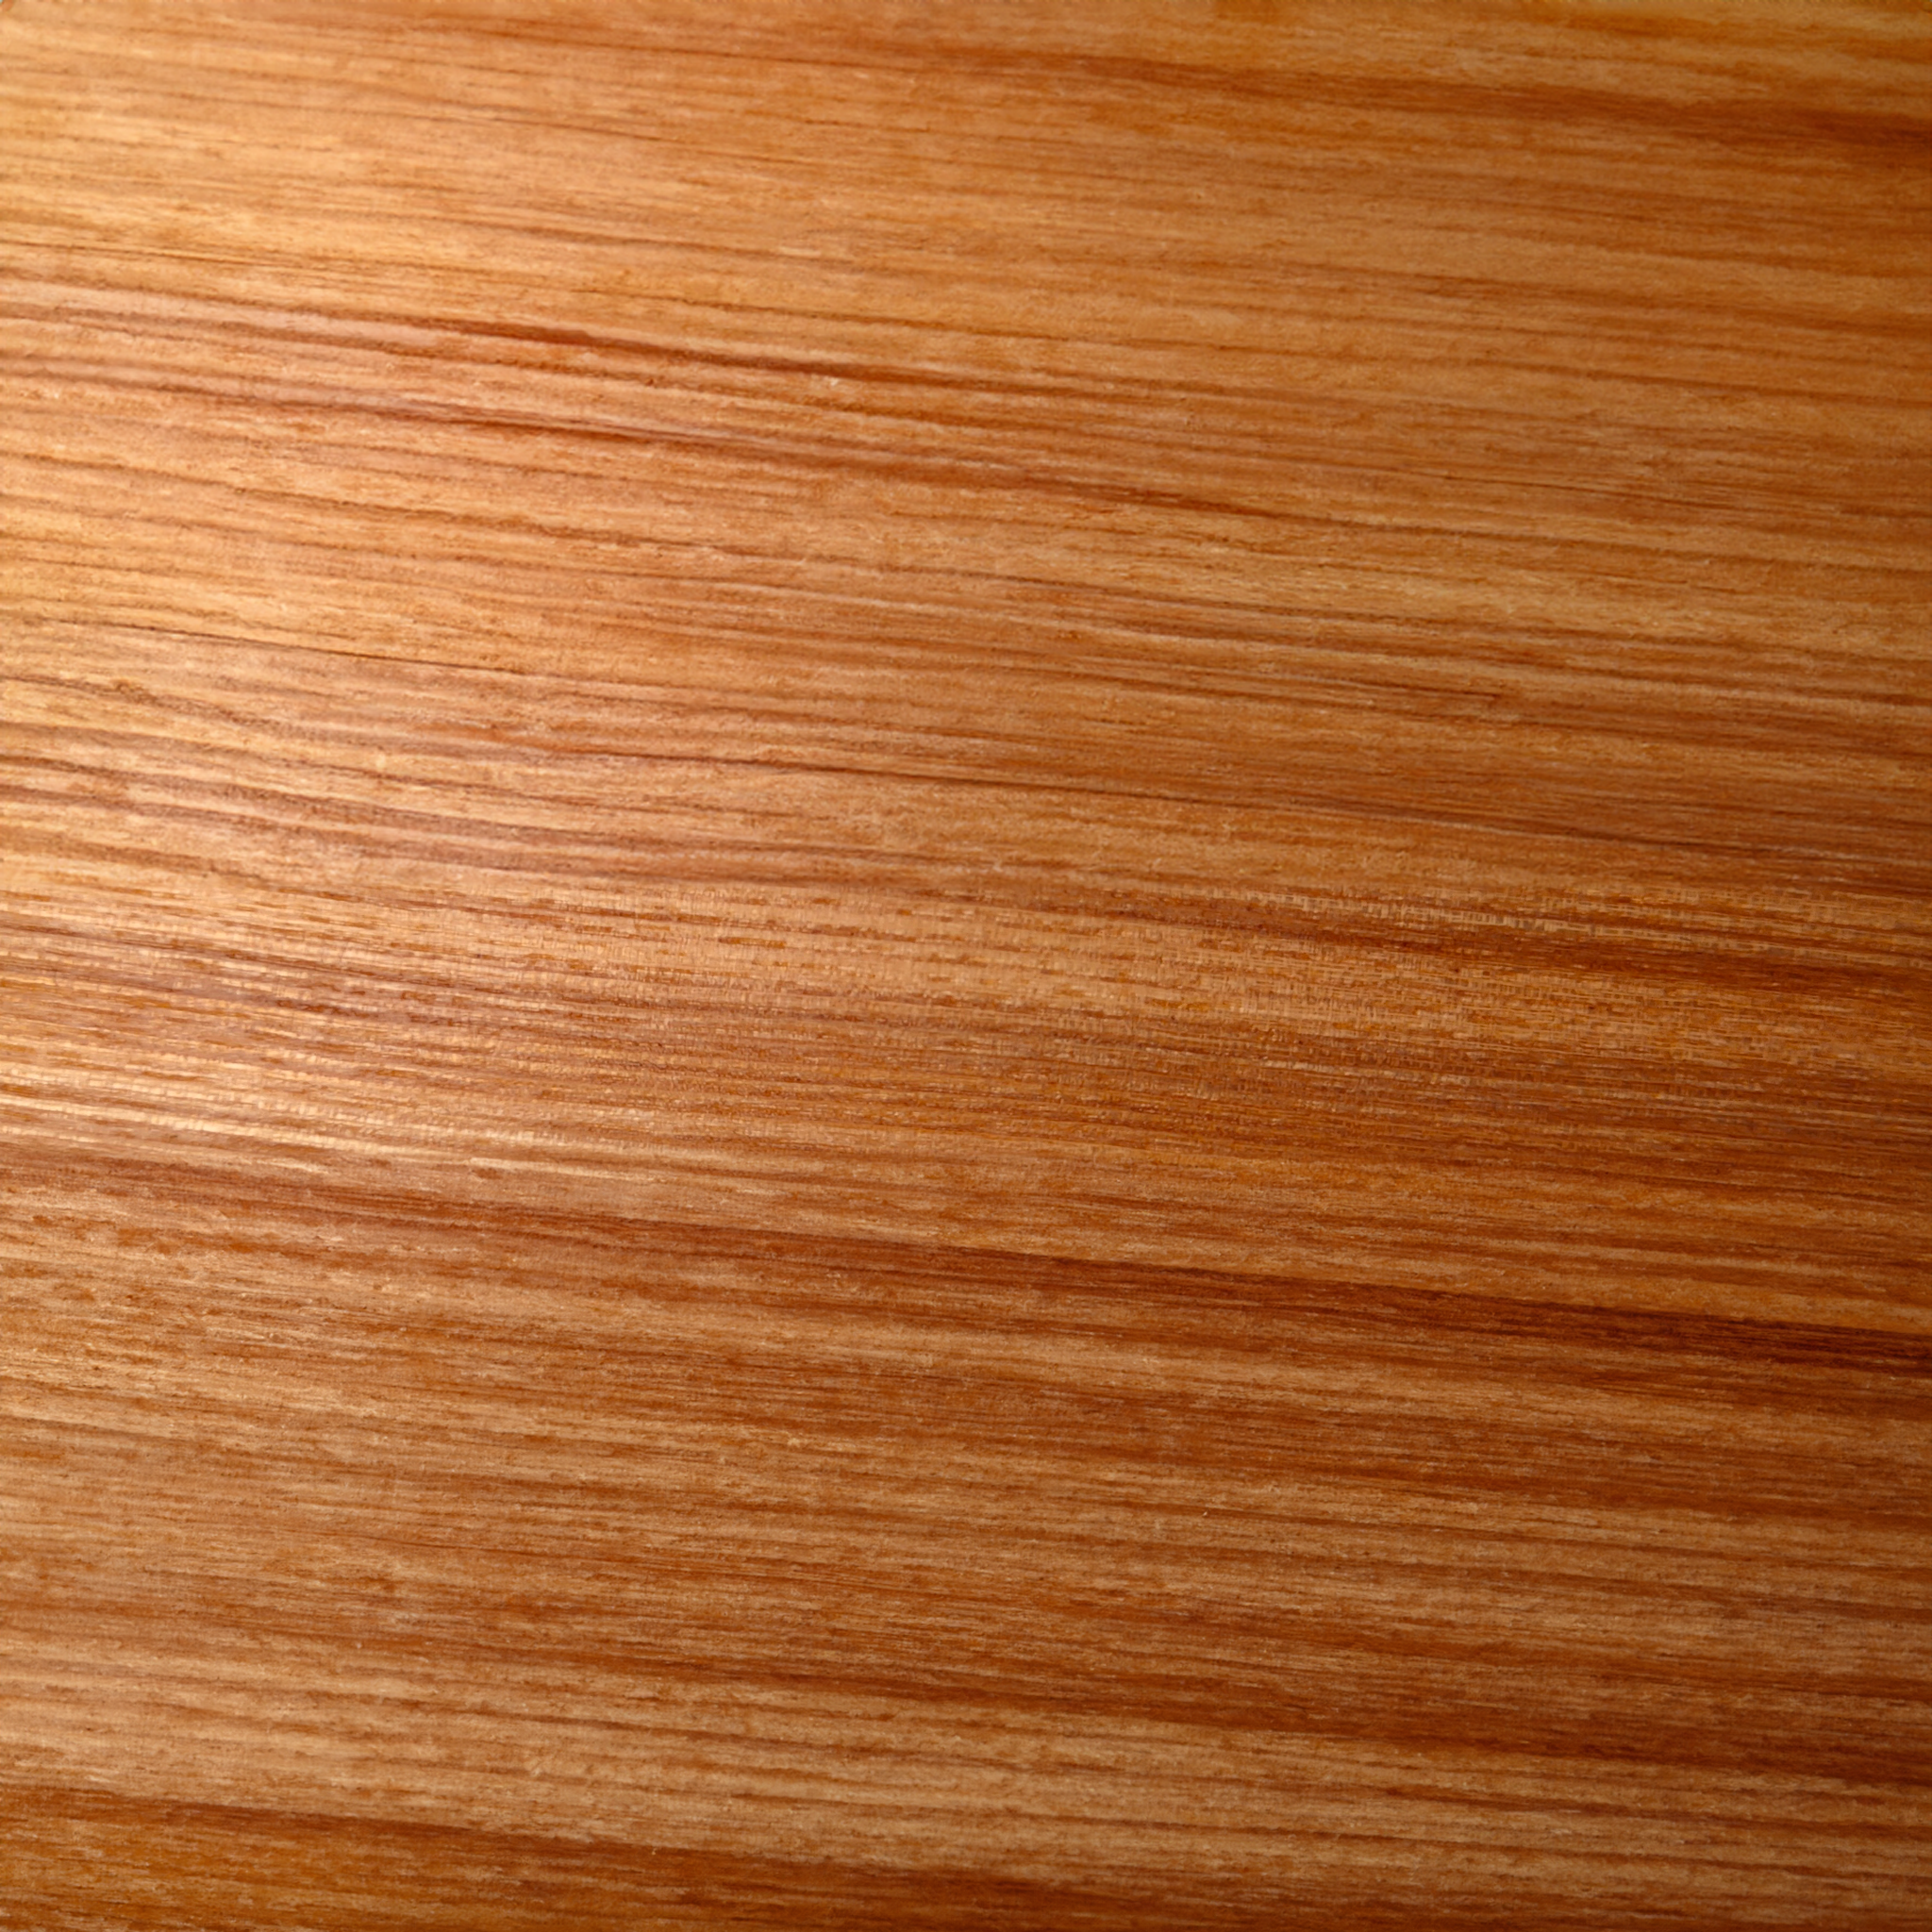 Olivesche o nachhaltige Holzpflege aus 100% natürlichen Inhaltsstoffen. studio moreandless